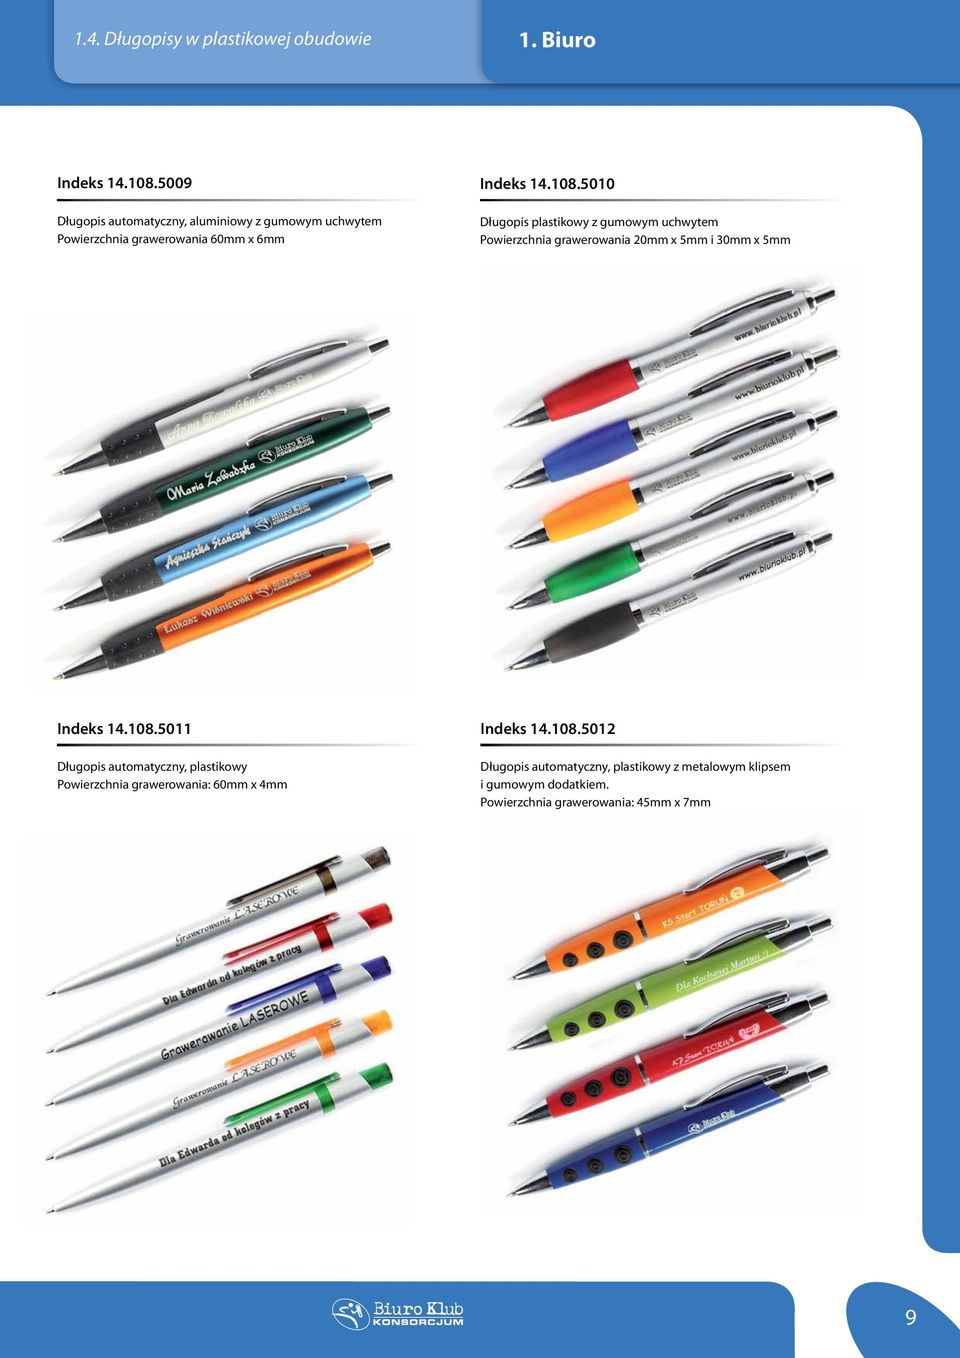 5010 Długopis plastikowy z gumowym uchwytem Powierzchnia grawerowania 20mm x 5mm i 30mm x 5mm Indeks 14.108.